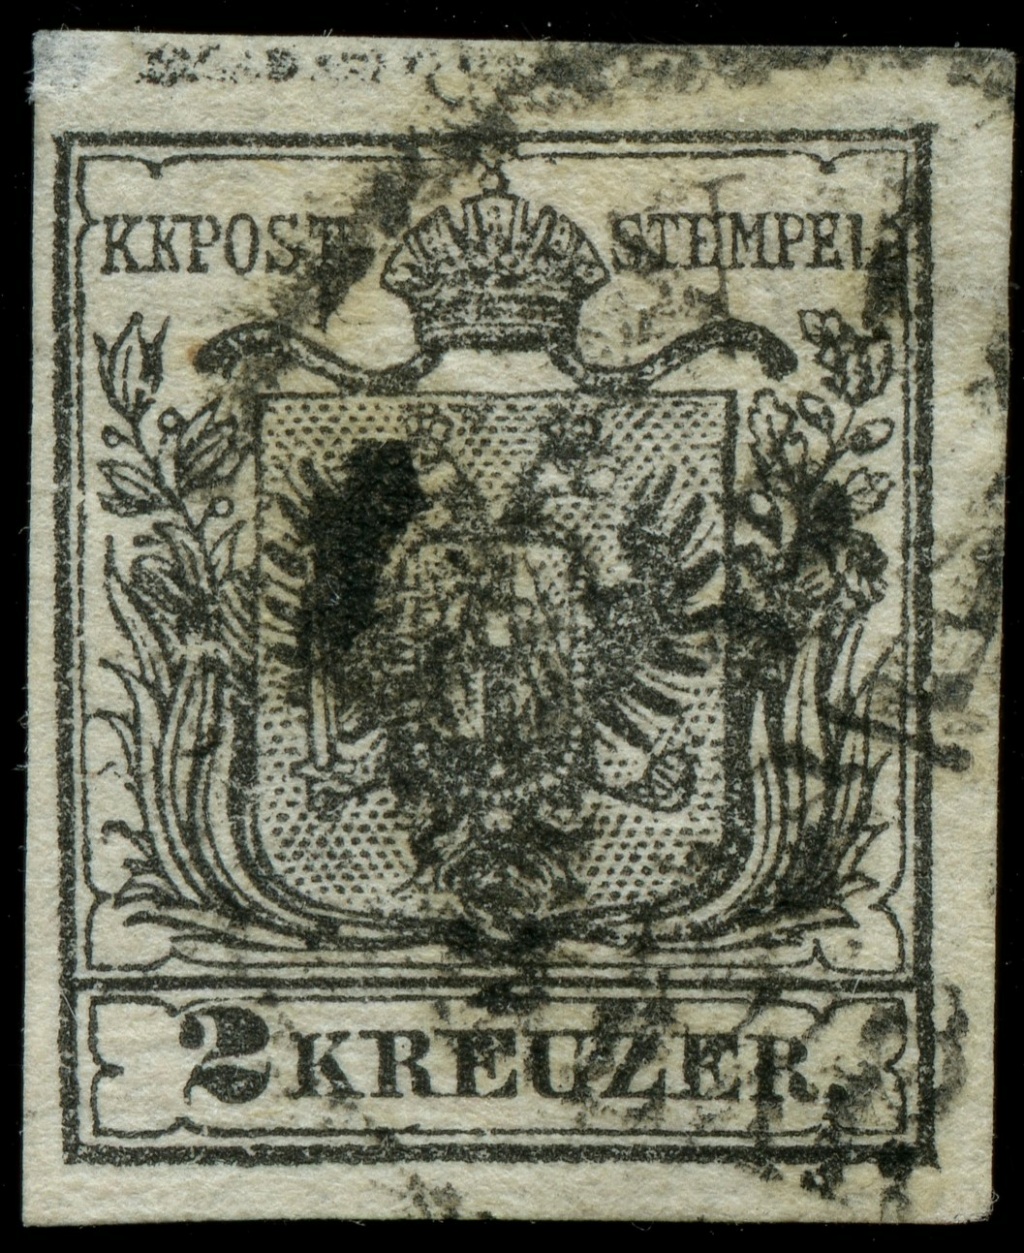 Kreuzer - Die erste Österreichische Ausgabe 1850 - Seite 26 Ank2_h10